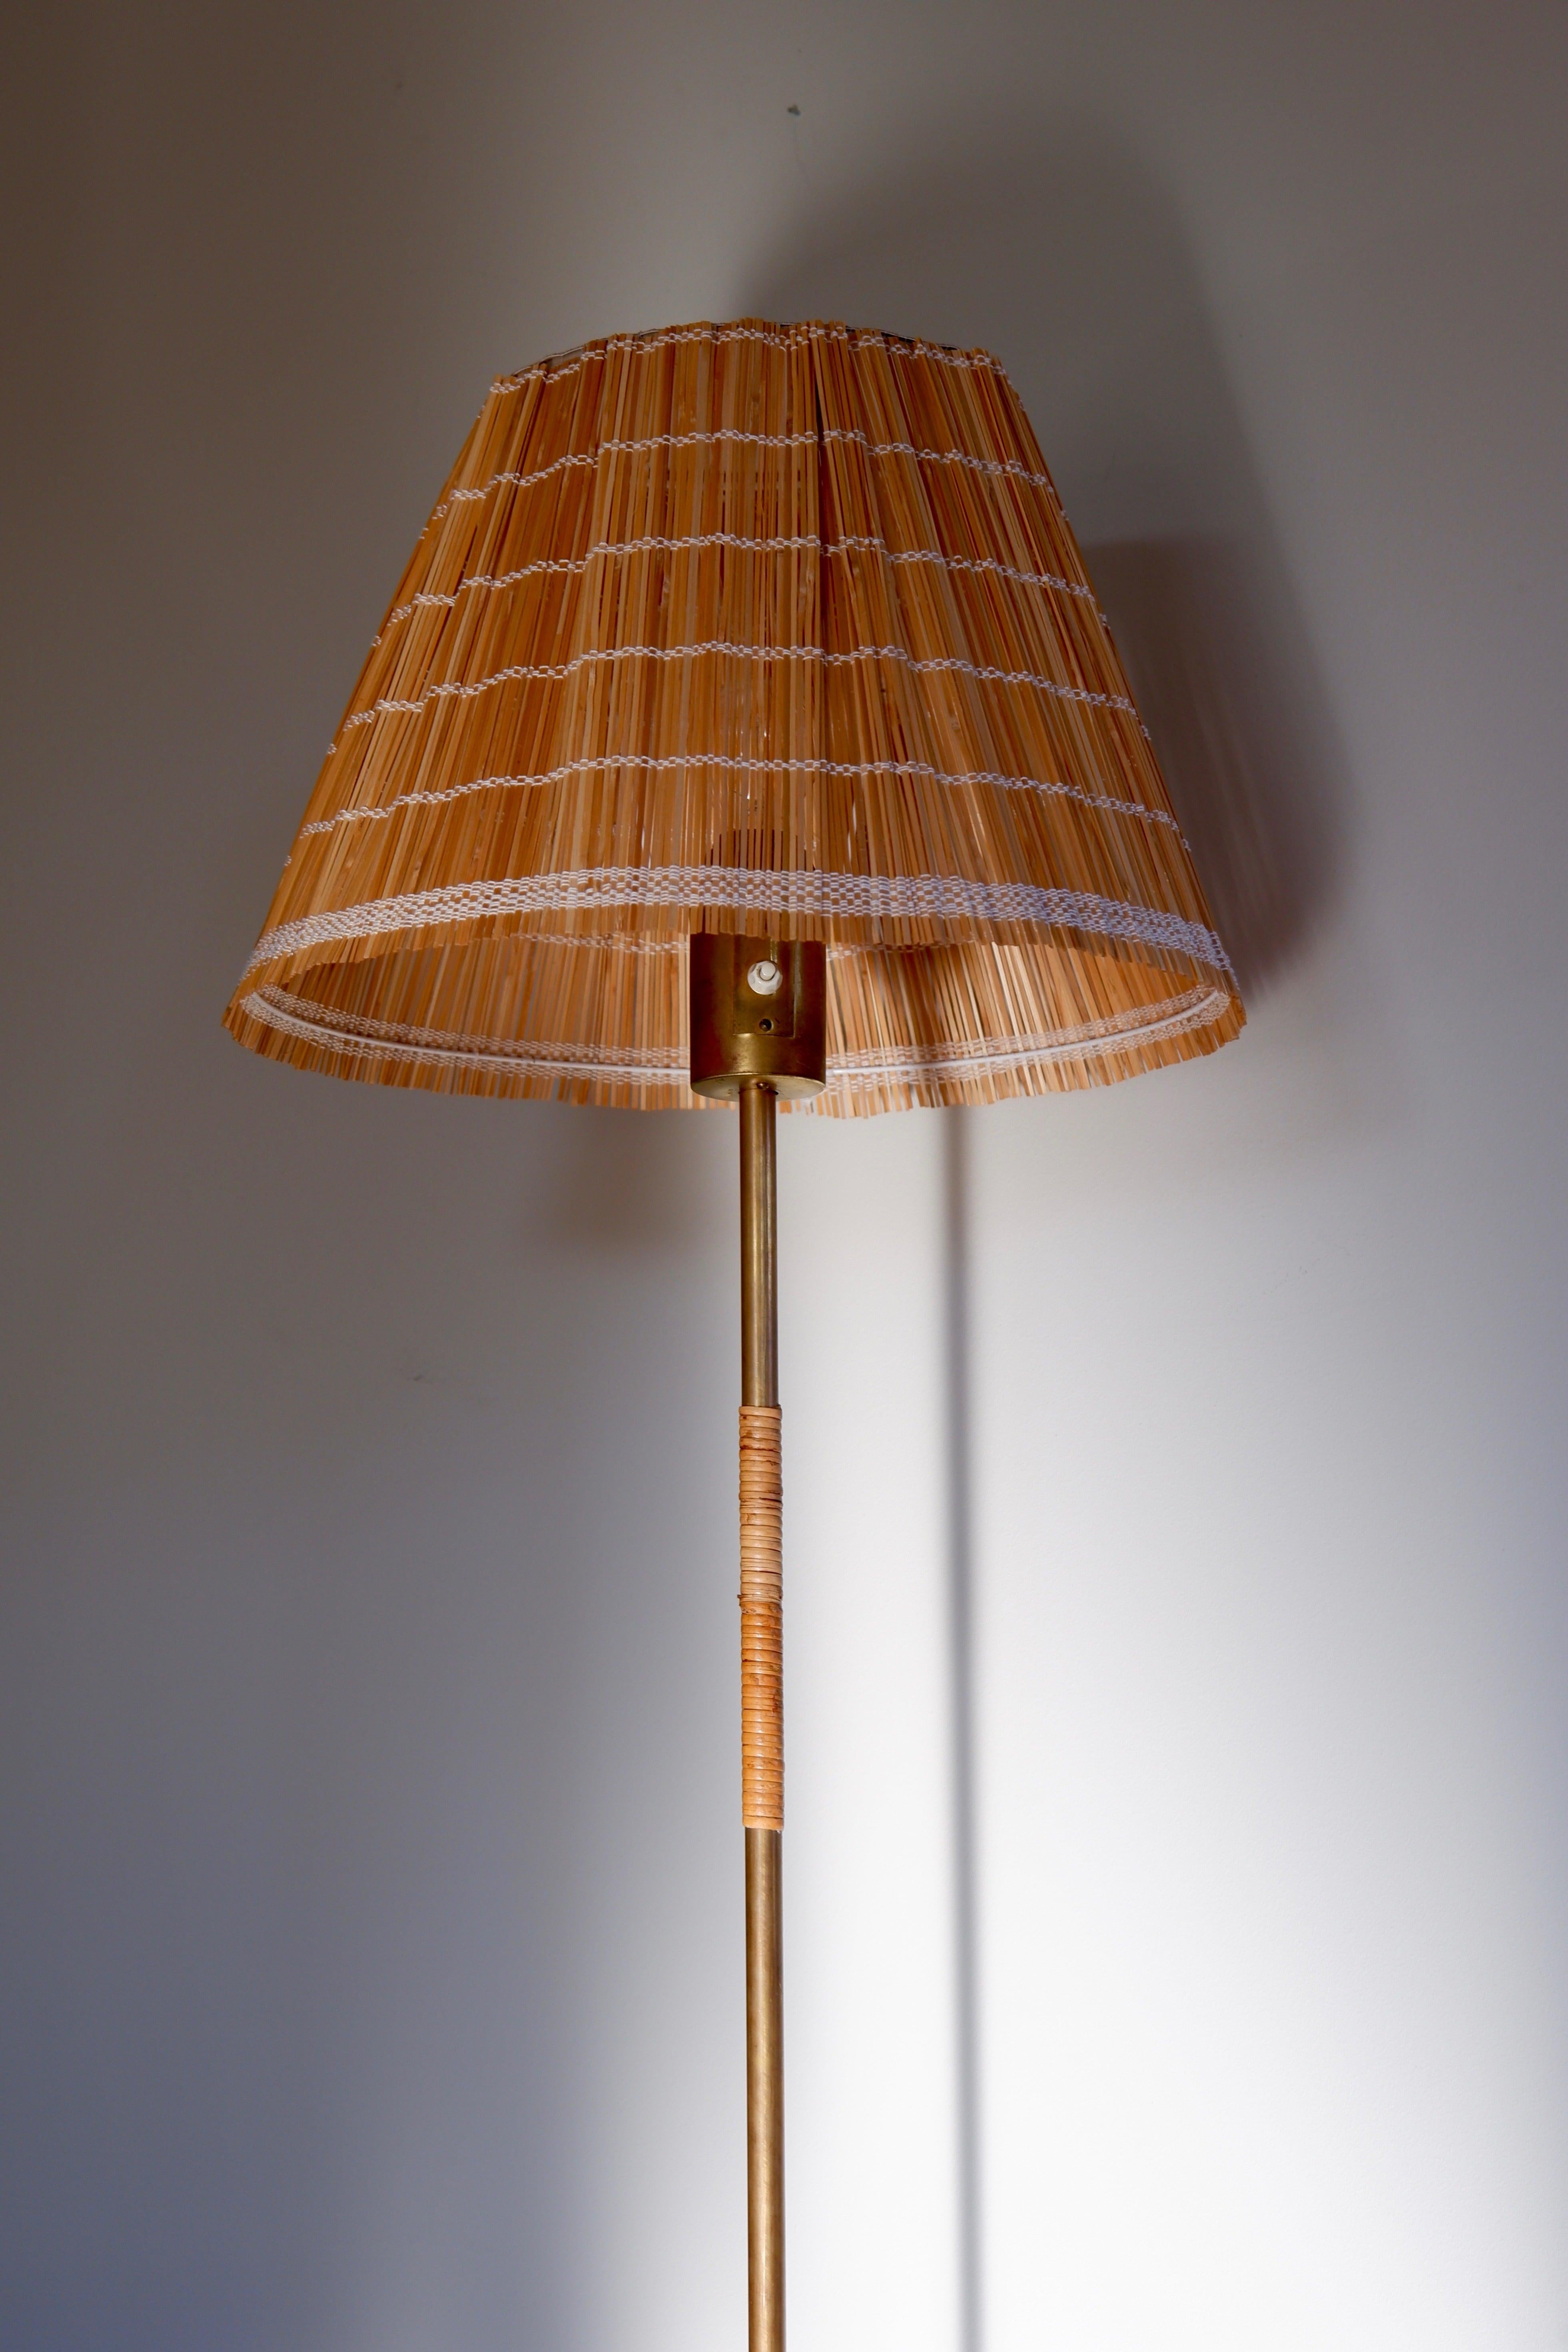 Beeindruckende Stehleuchte von Paavo Tynell, entworfen in den 50er Jahren und hergestellt von IDMAN. Die Leuchte hat einen Messingfuß, einen Kern und einen Kopf mit einem einzelnen Lichtschalter auf der Oberseite. Der Messingkern ist mit Rattan